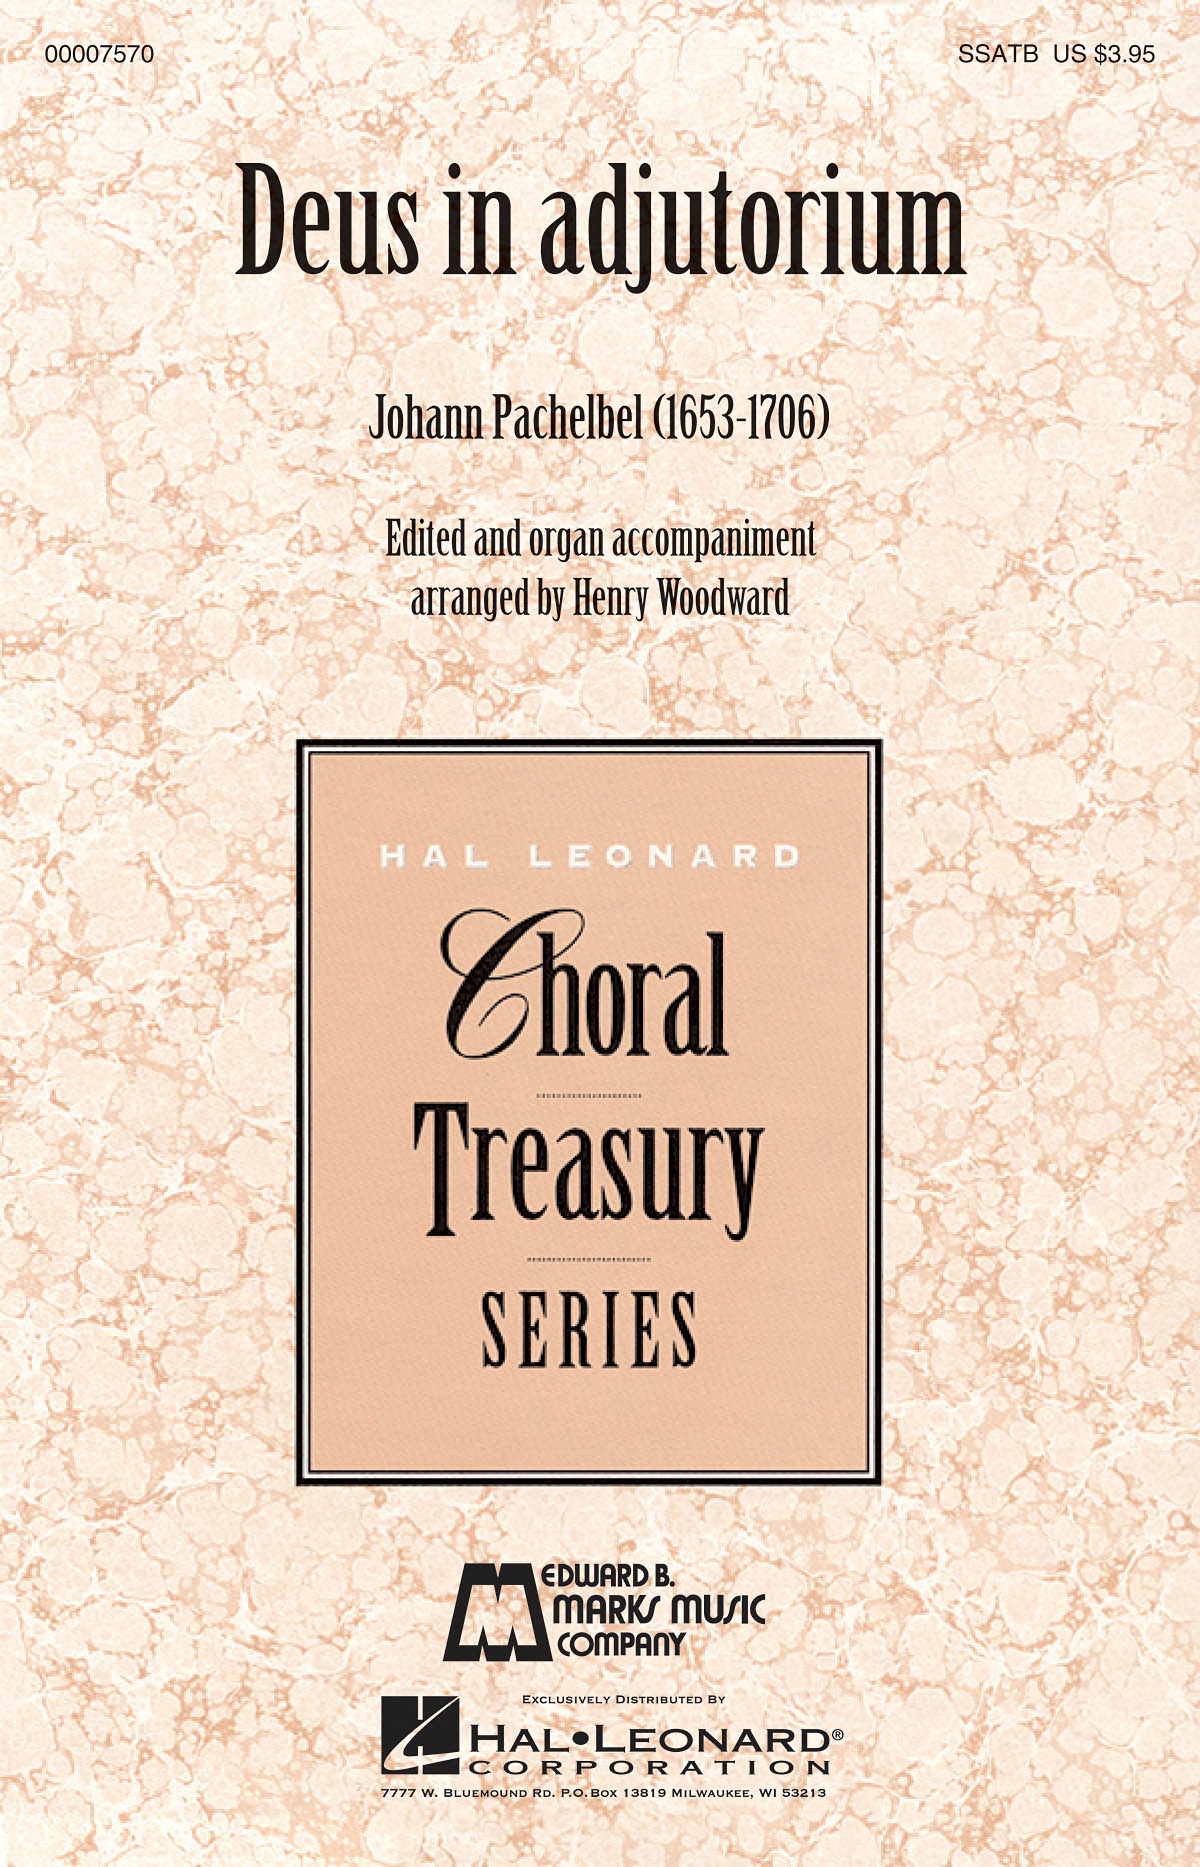 Johann Pachelbel: Deus in adjutorium: Mixed Choir a Cappella